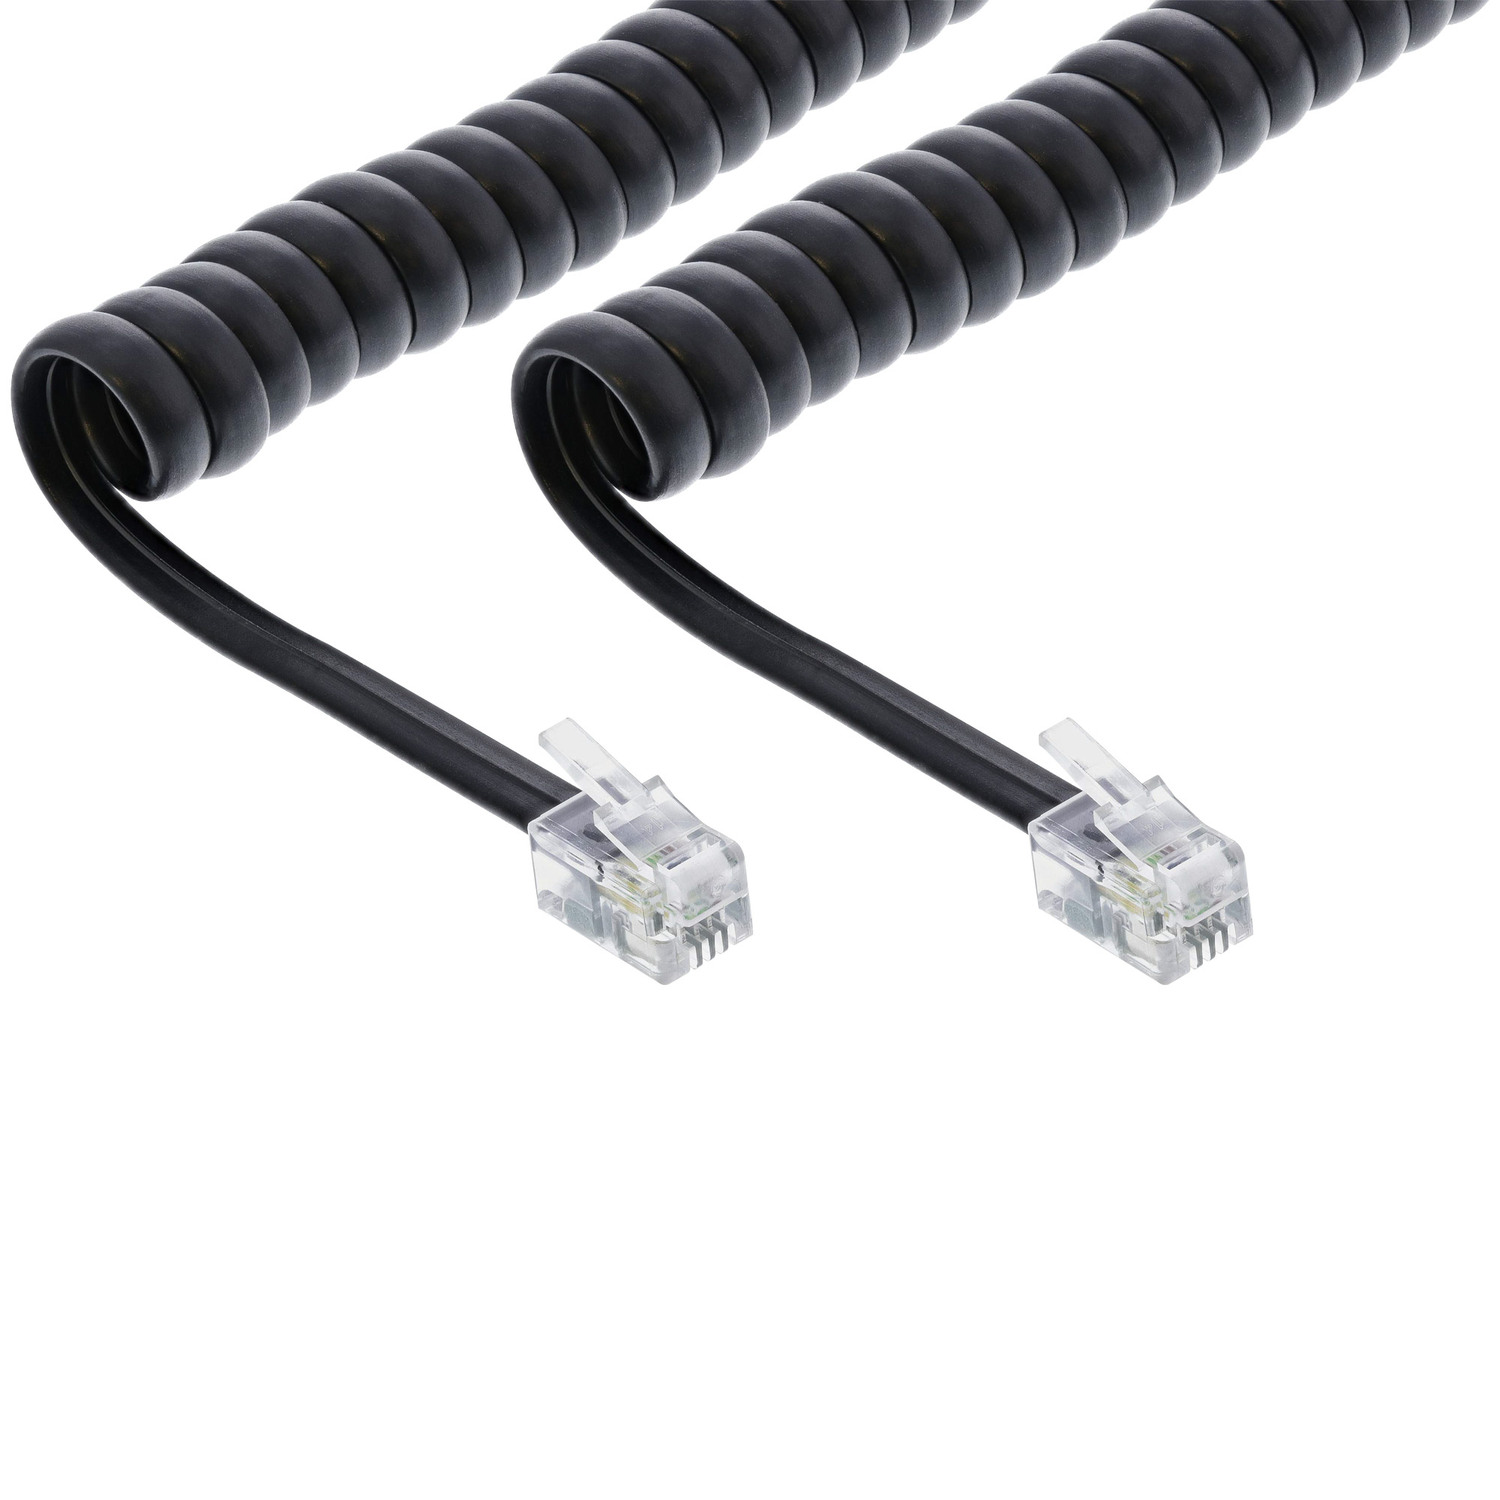 schwarz, 1:1 INLINE ISDN Stecker, Spiralkabel, / Stecker InLine® m Western, TAE, / TAE / max. 4m 4 RJ10